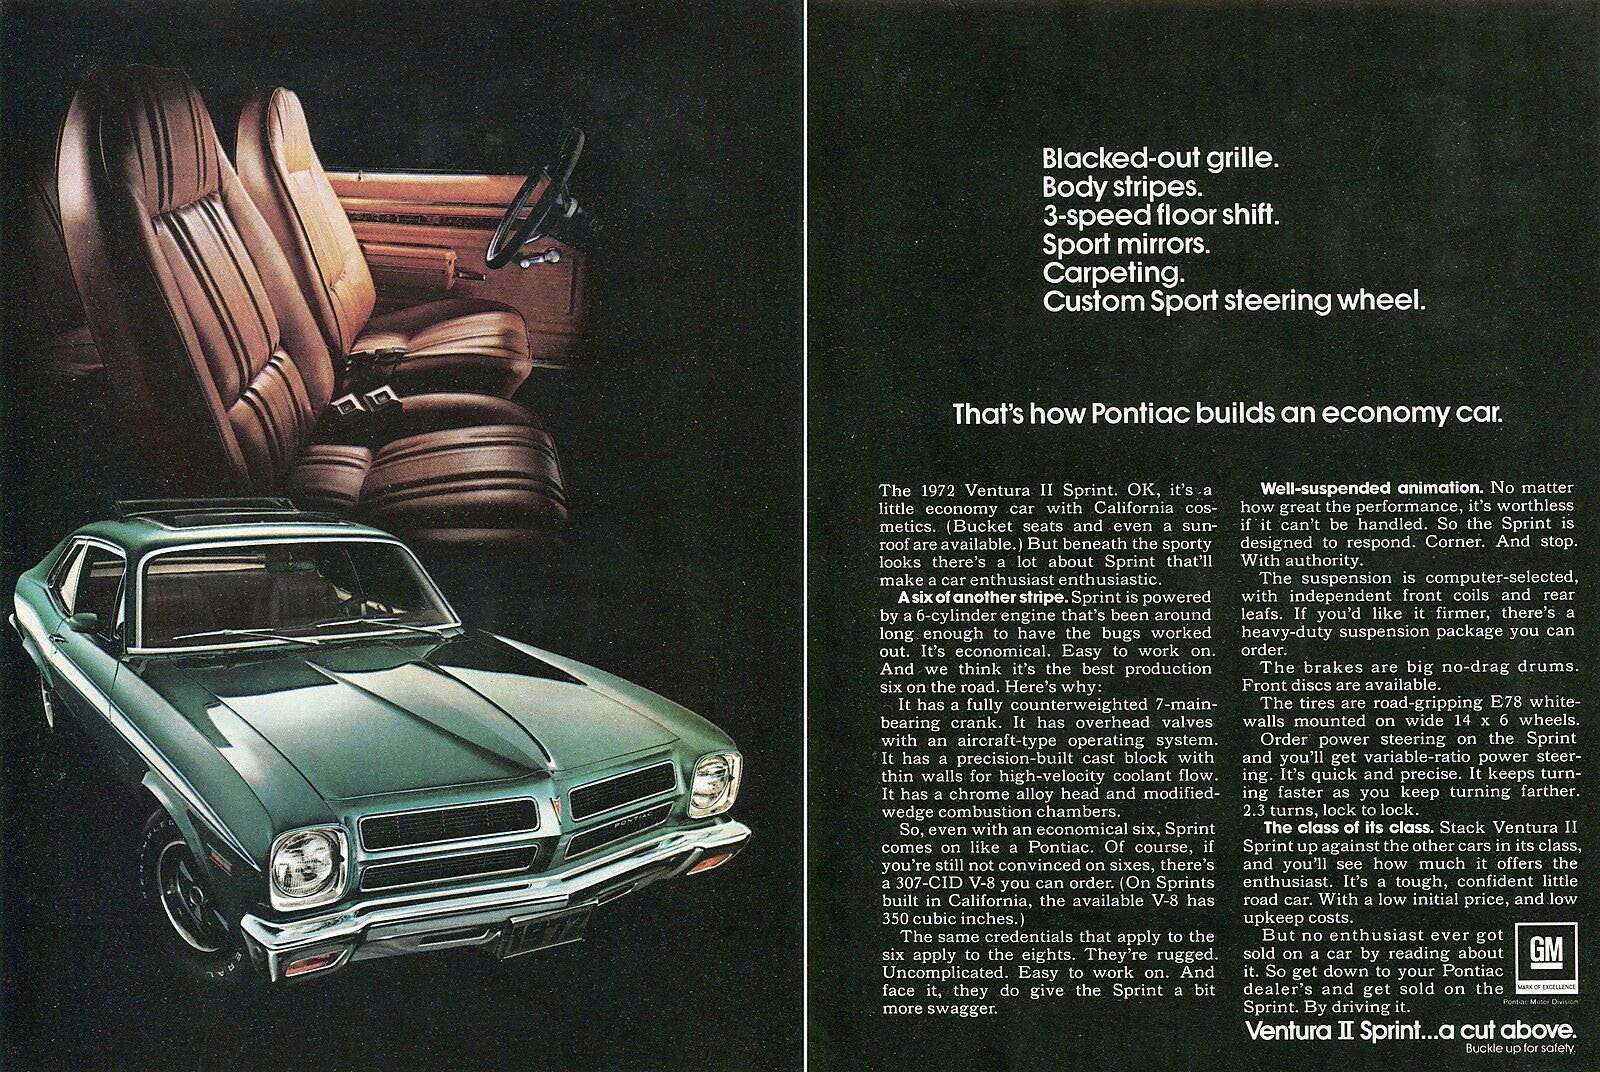 1972 Pontiac Ventura Sprint II print advertisement